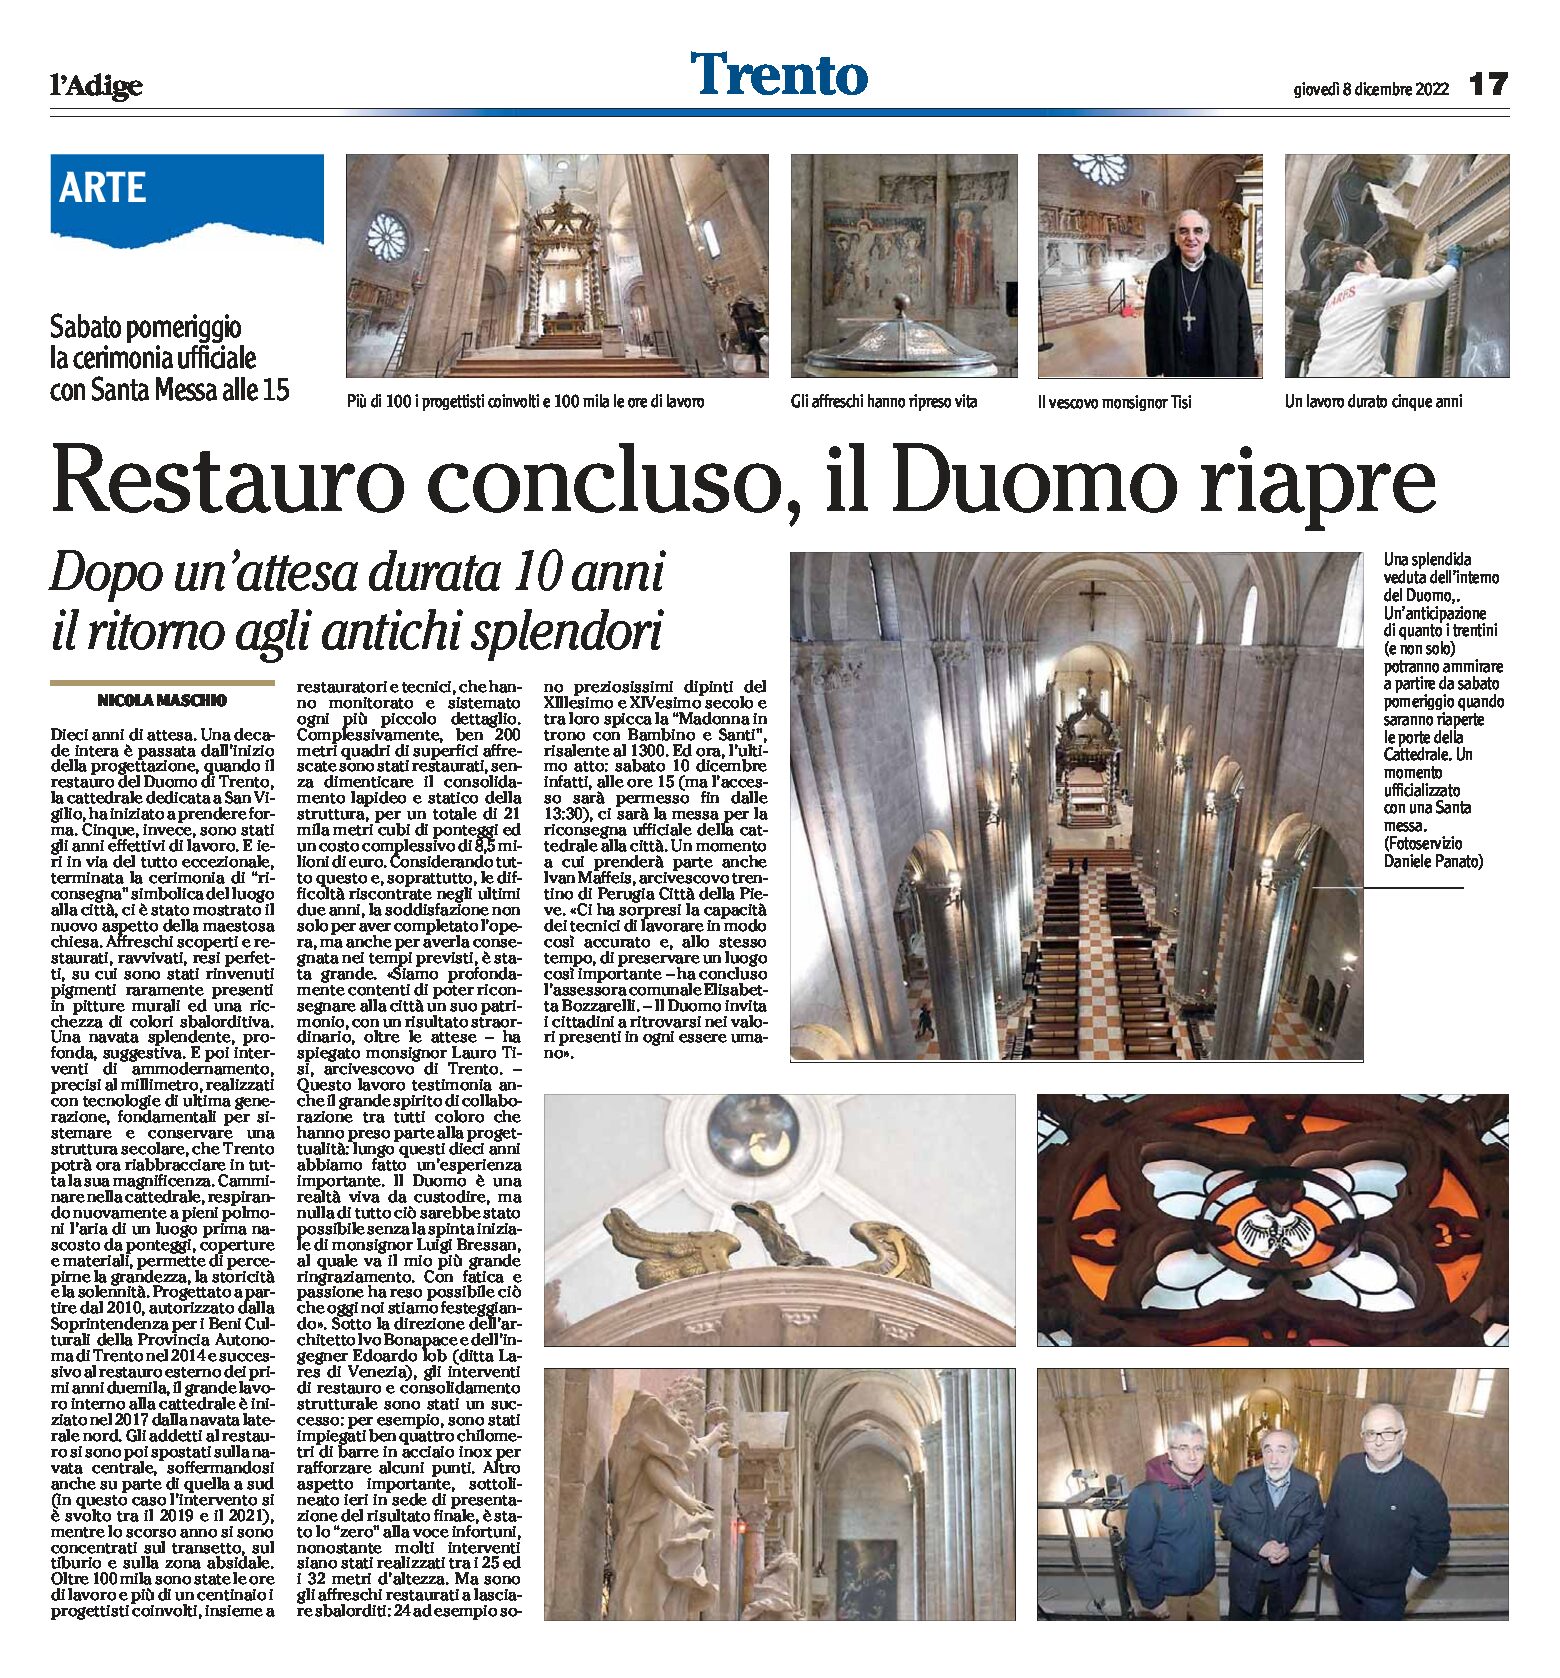 Trento: restauro concluso, il Duomo riapre